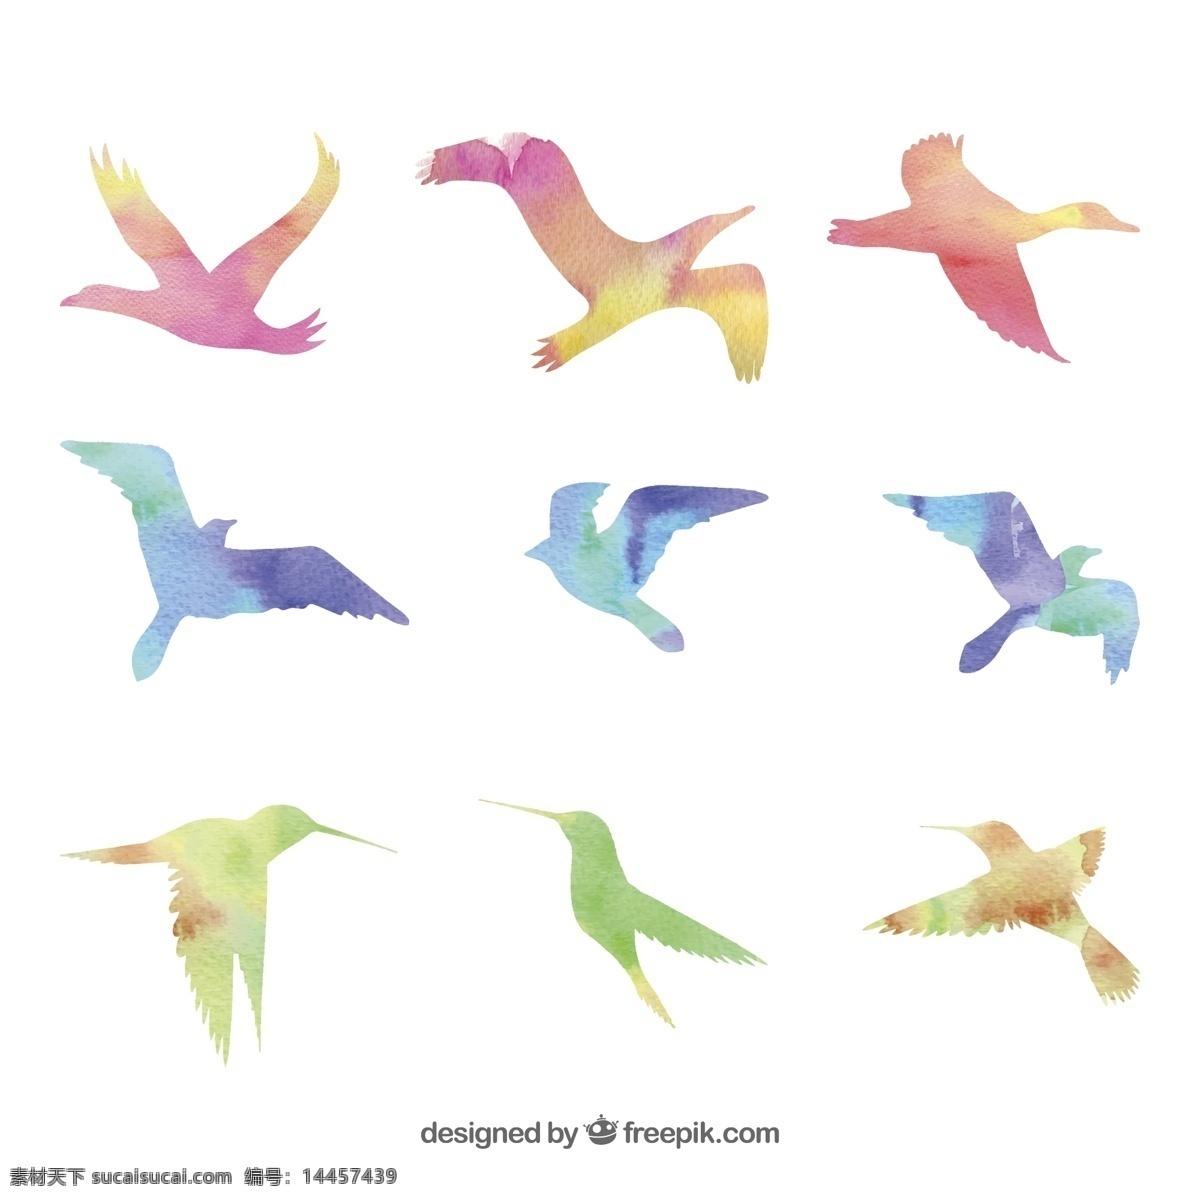 彩色 鸟类 剪影 天鹅 大雁 海鸥 鸽子 蜂鸟 矢量 高清图片